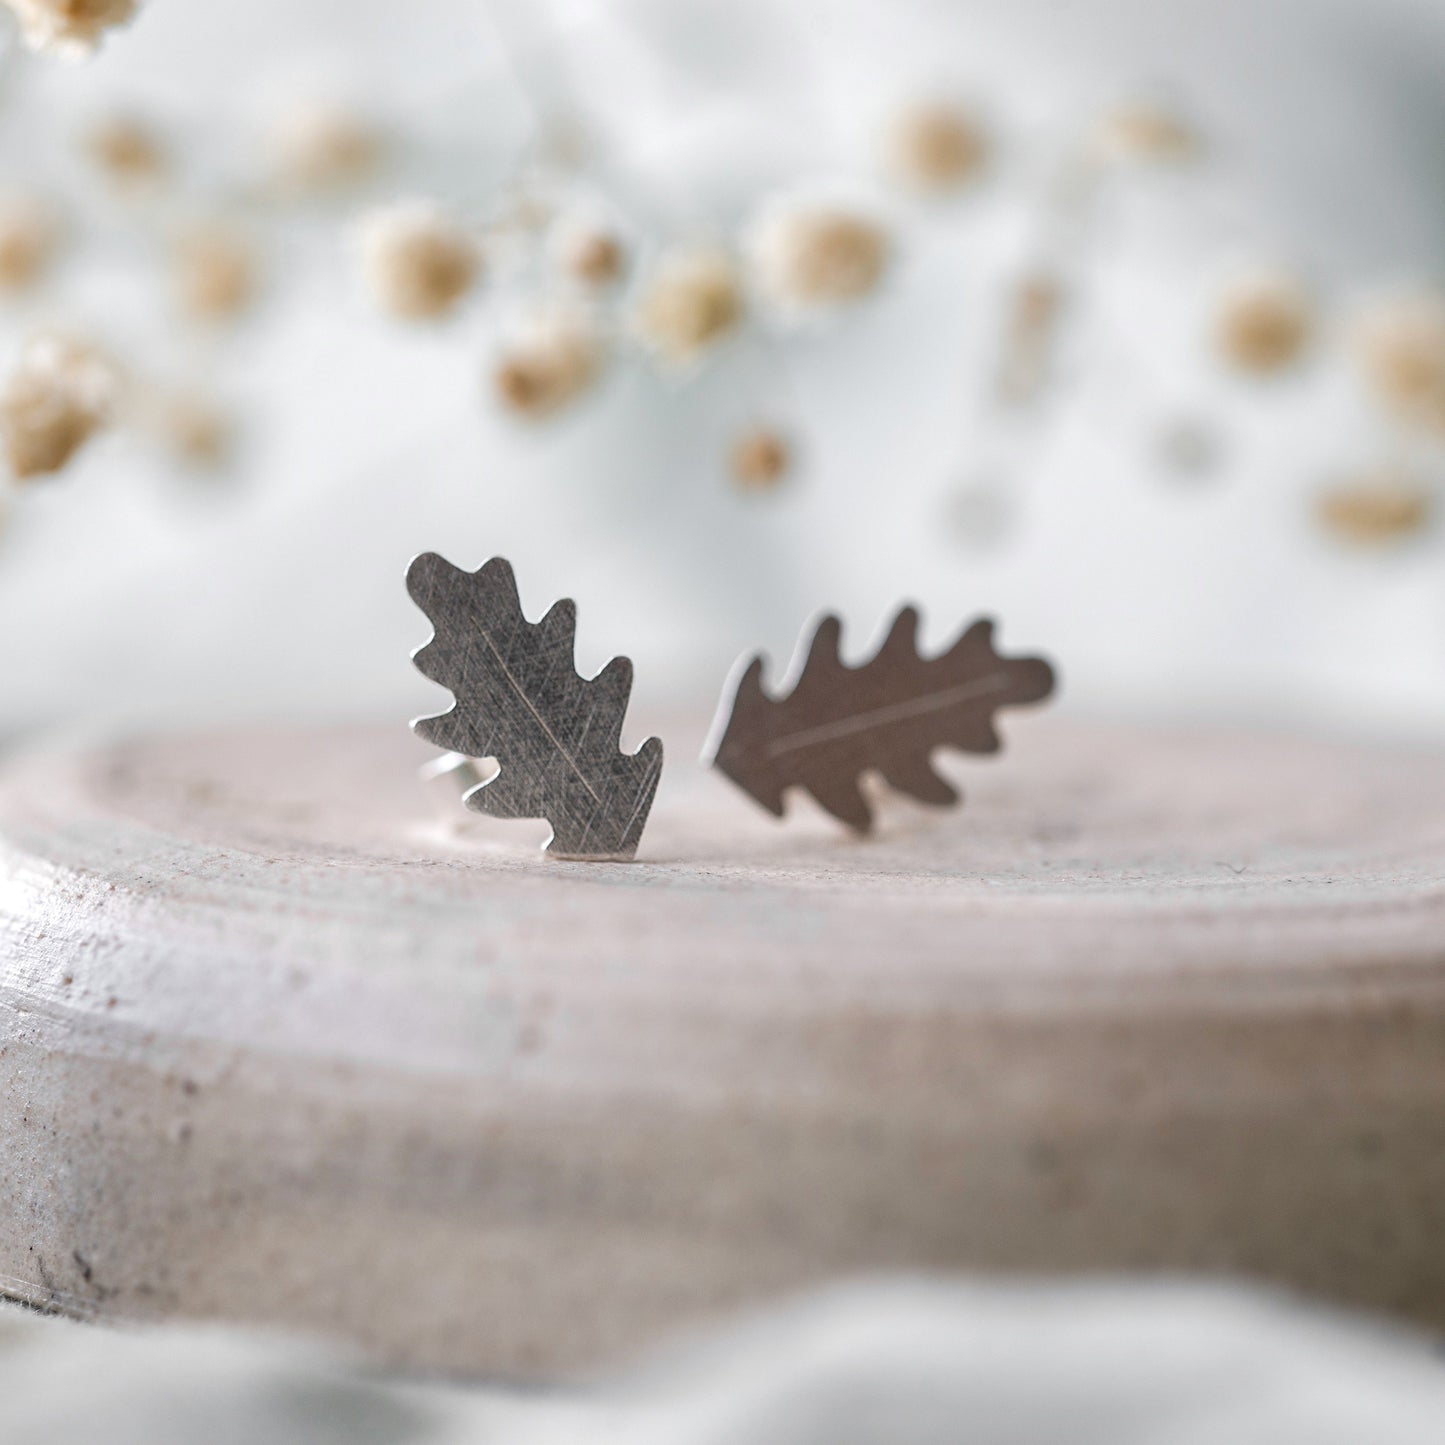 Little Silver Oak Leaf Studs Earrings Handmade by Anna Calvert Jewellery in the UK